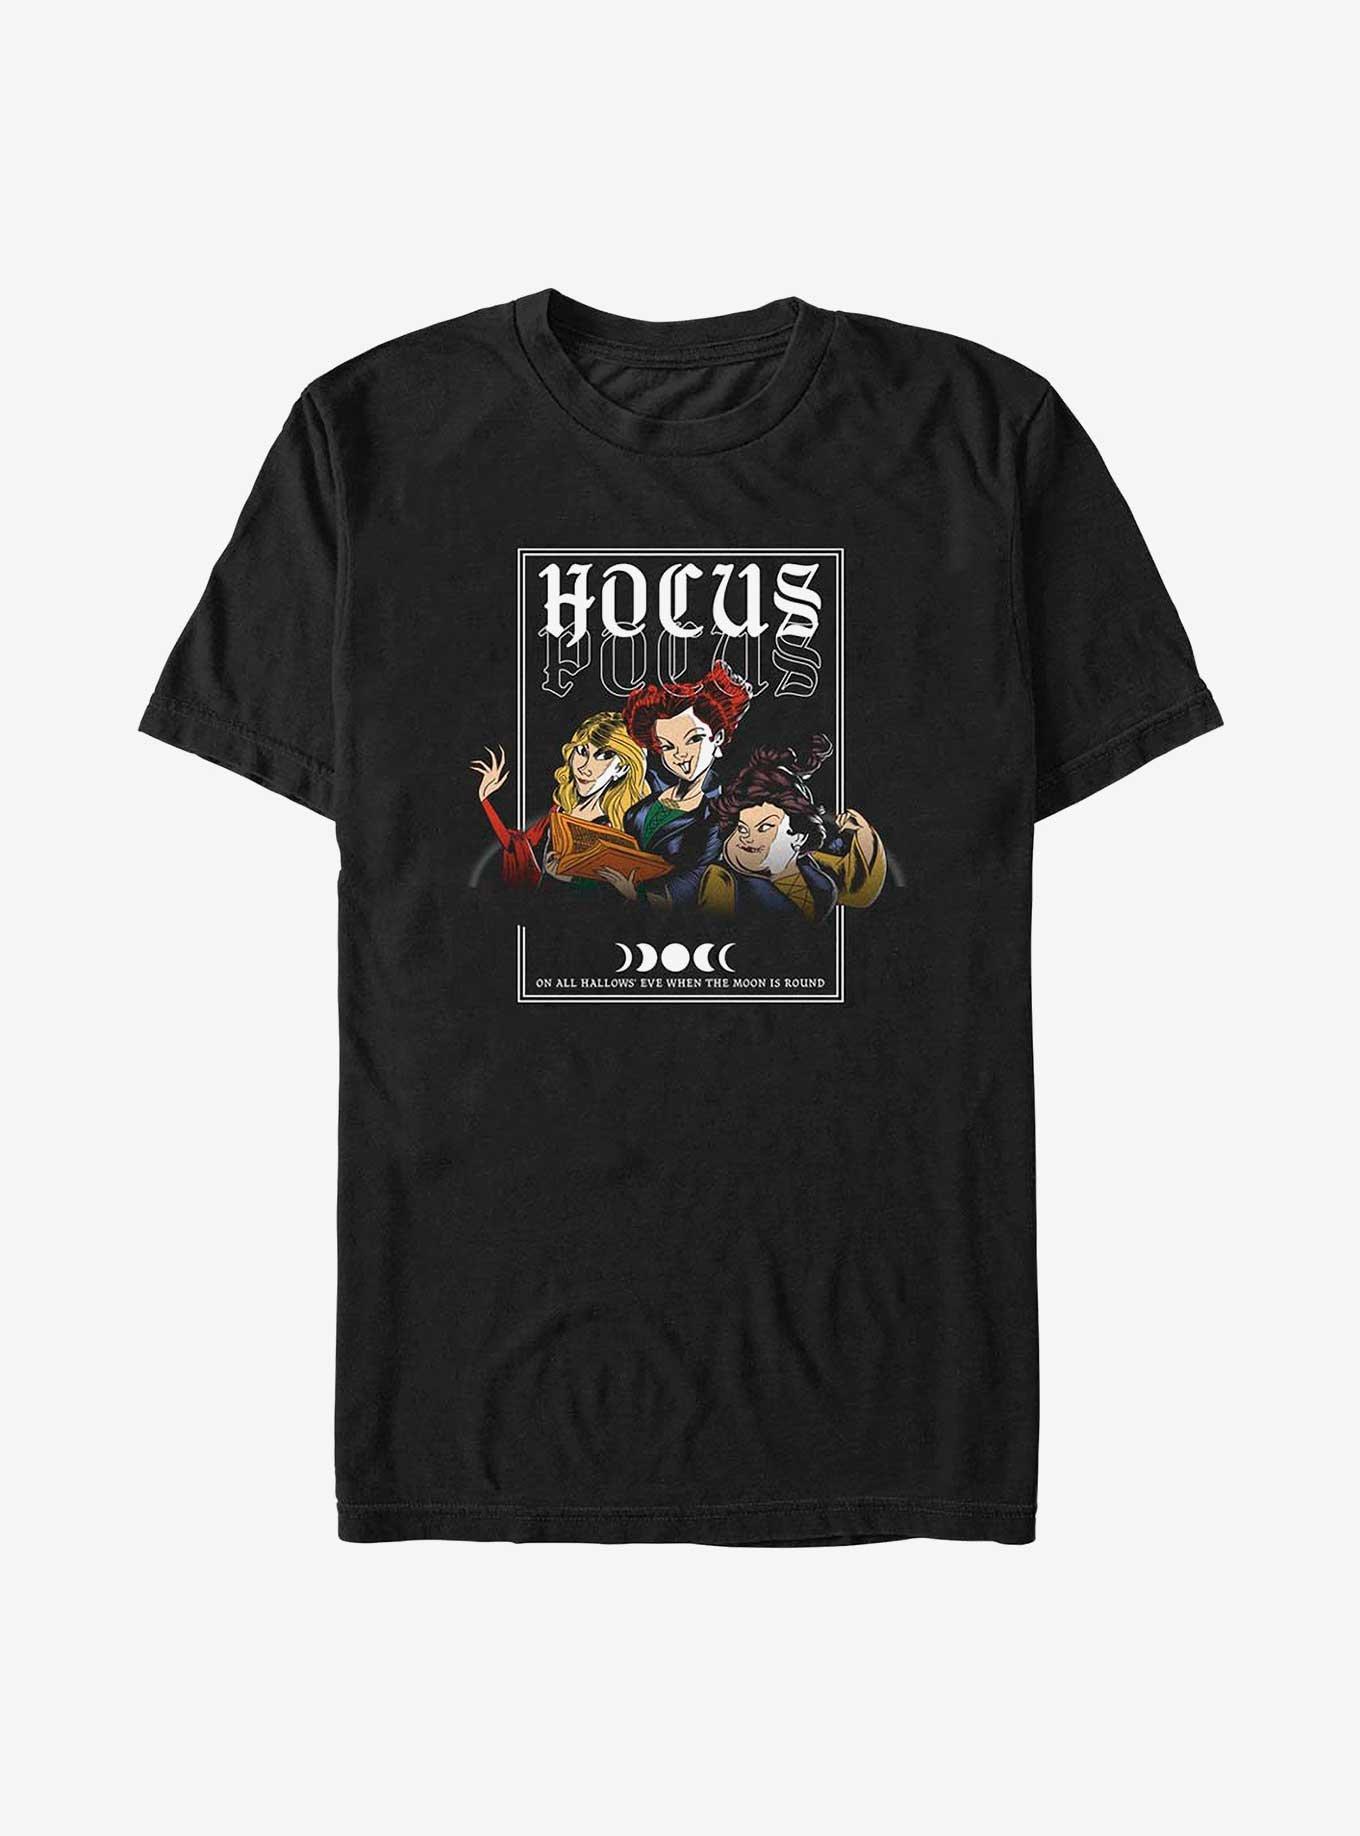 Disney Hocus Pocus Sanderson Sisters T-Shirt